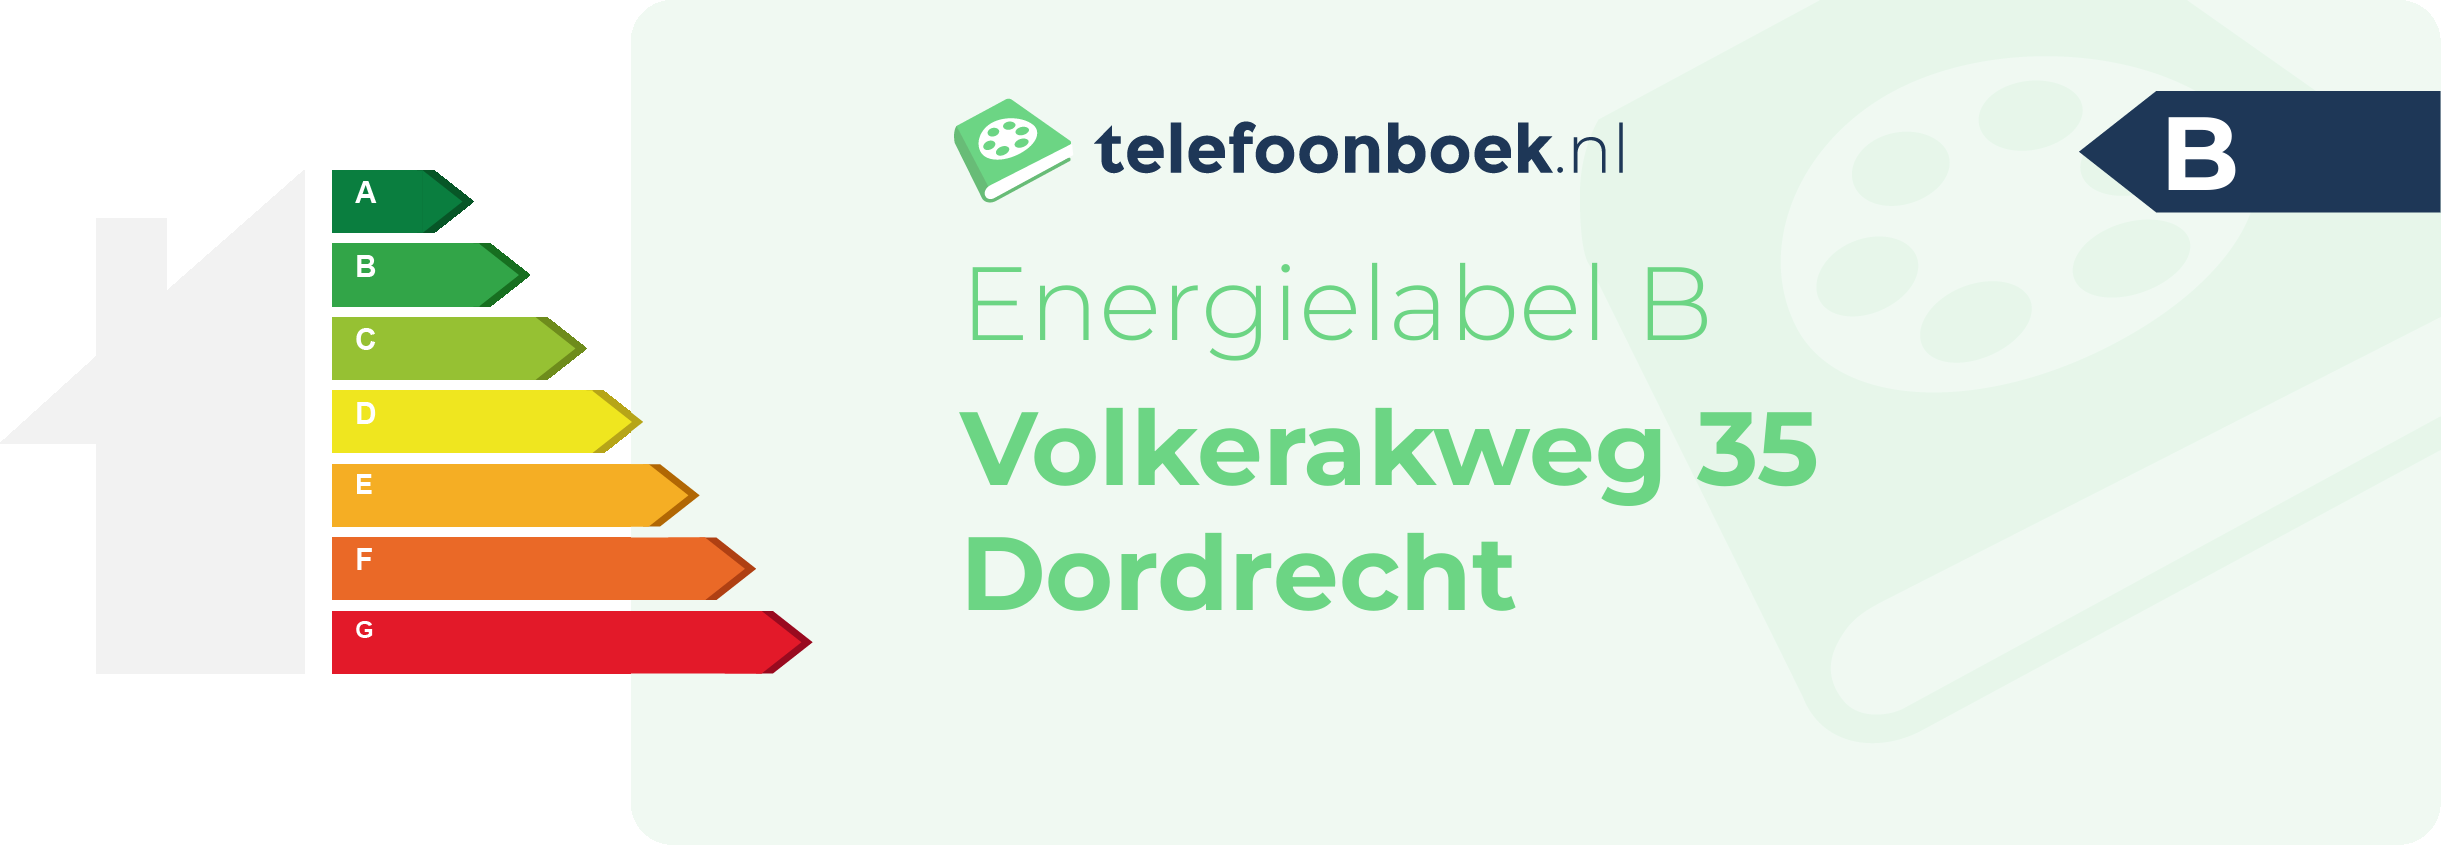 Energielabel Volkerakweg 35 Dordrecht